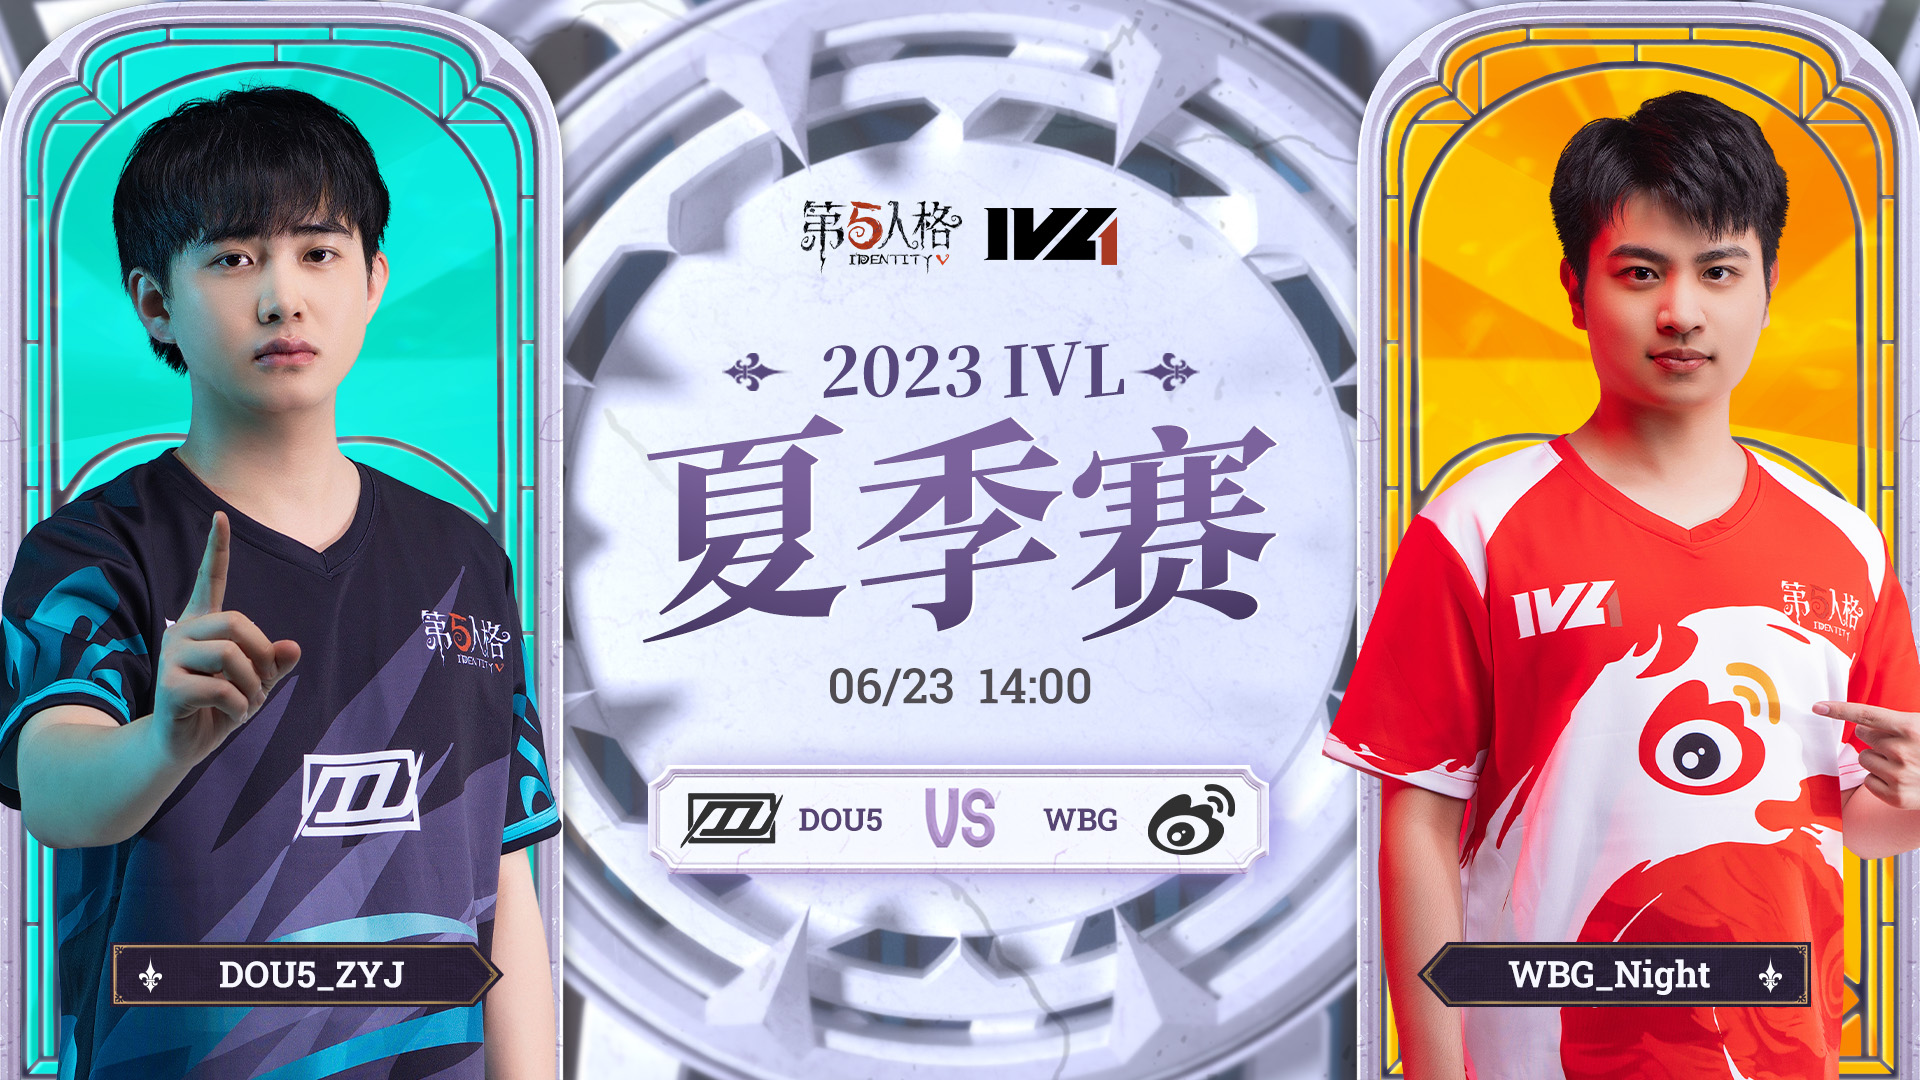 【2023IVL】夏季赛W3D2录像 DOU5 vs WBG